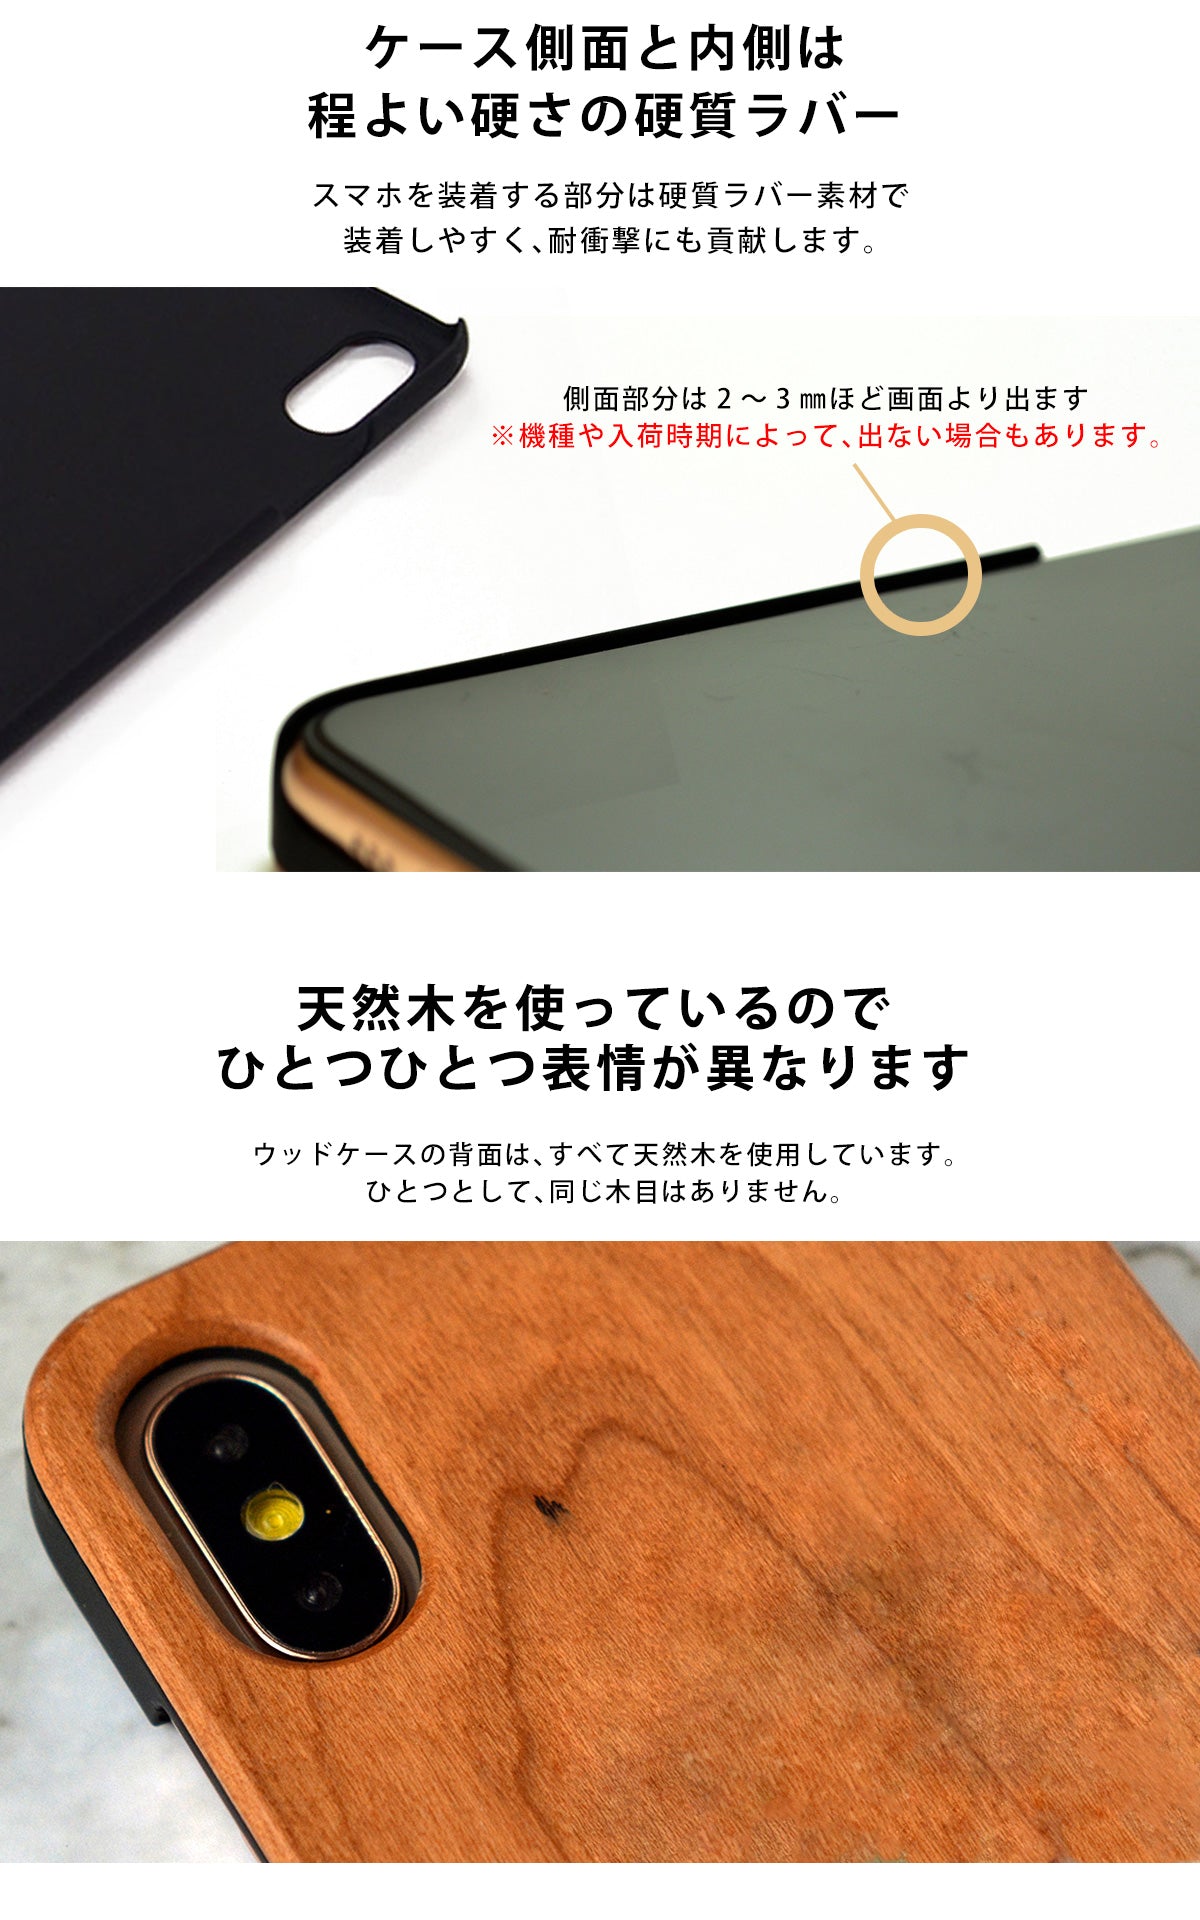 ウッド 木製 竹製 天然木 iPhone Xperia ケース tr1427